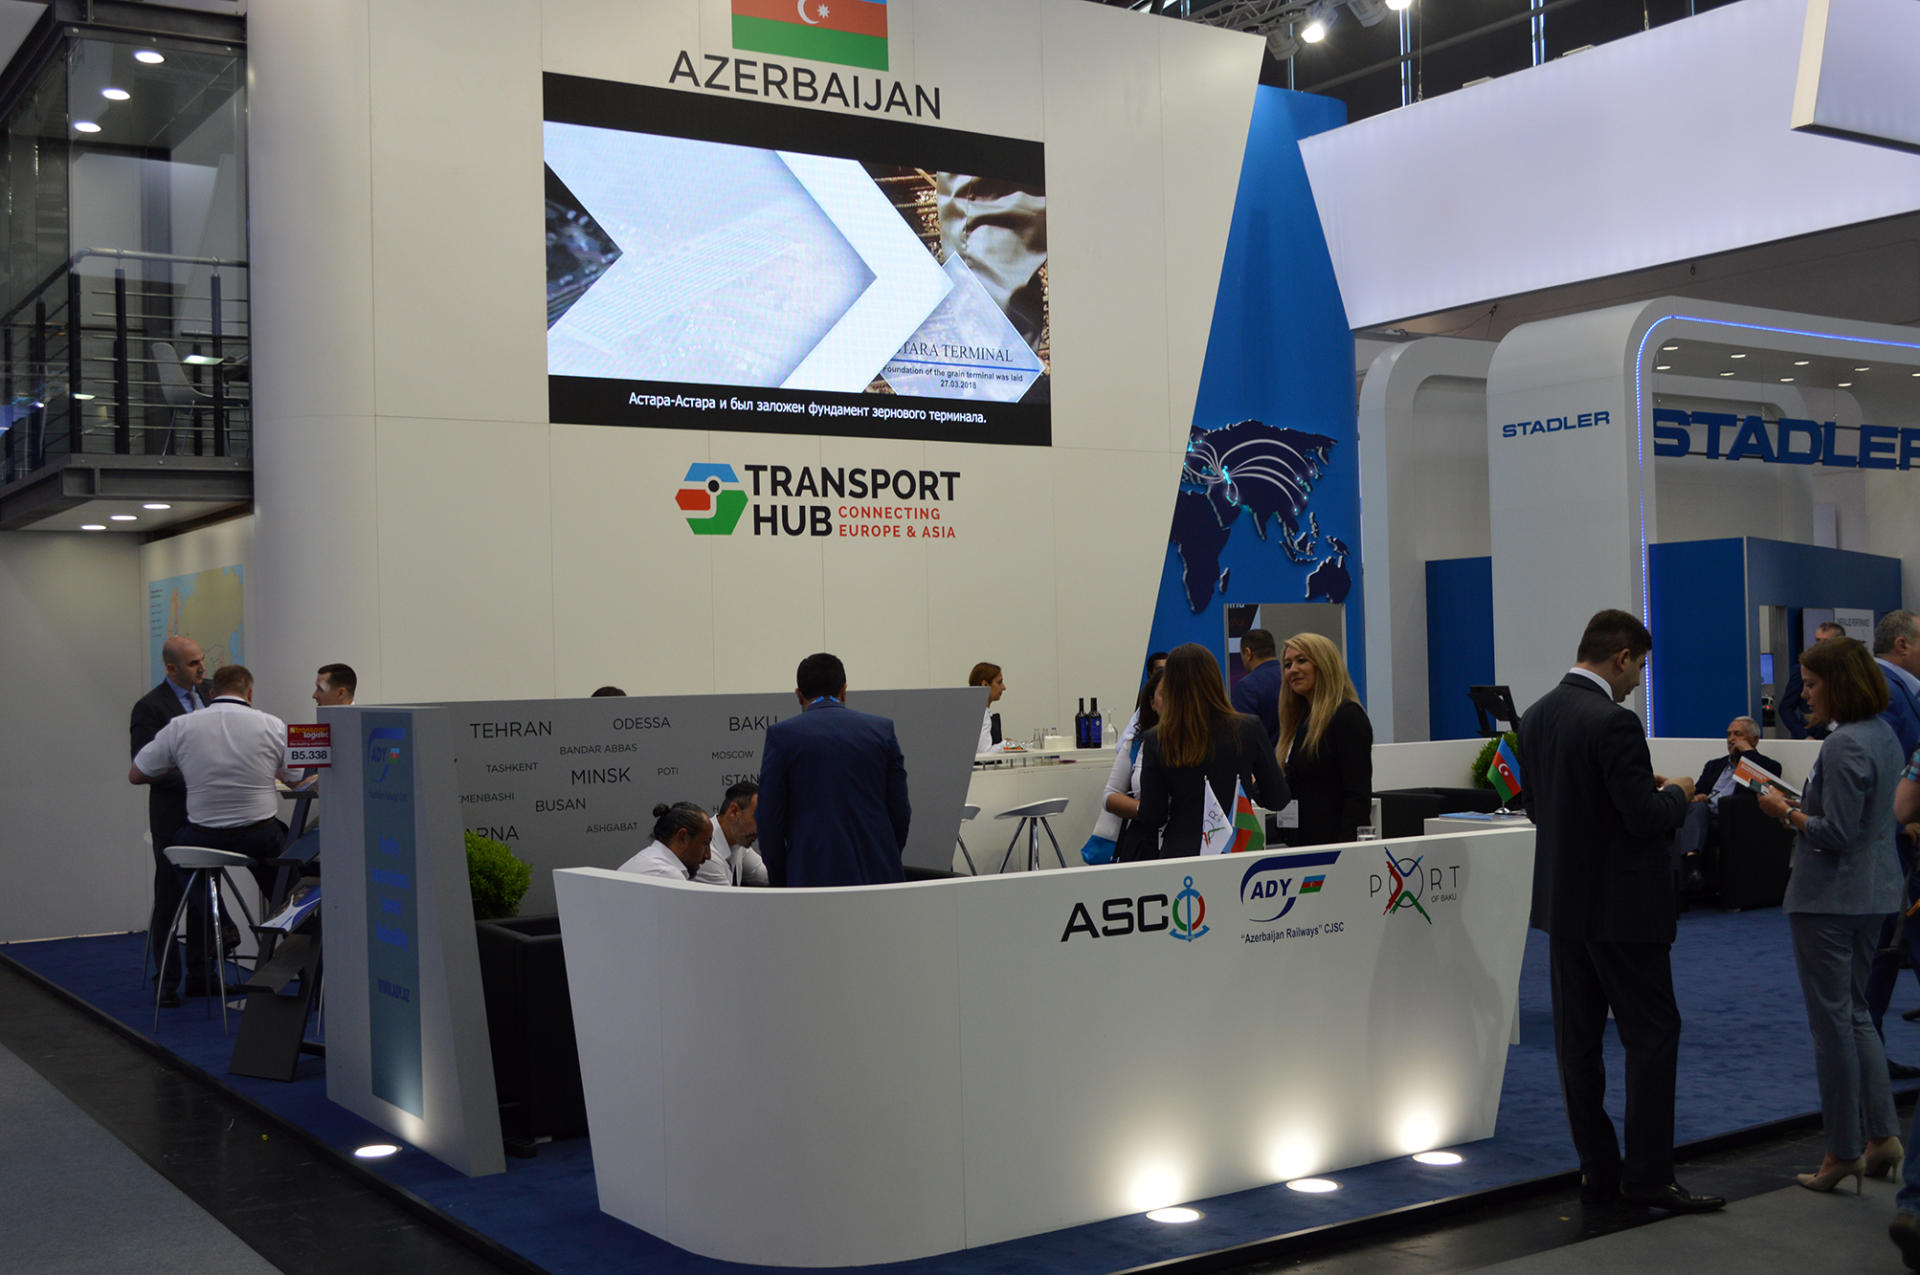 Азербайджан впервые представлен на крупнейшей транспортной выставке Европы (ФОТО) - Gallery Image